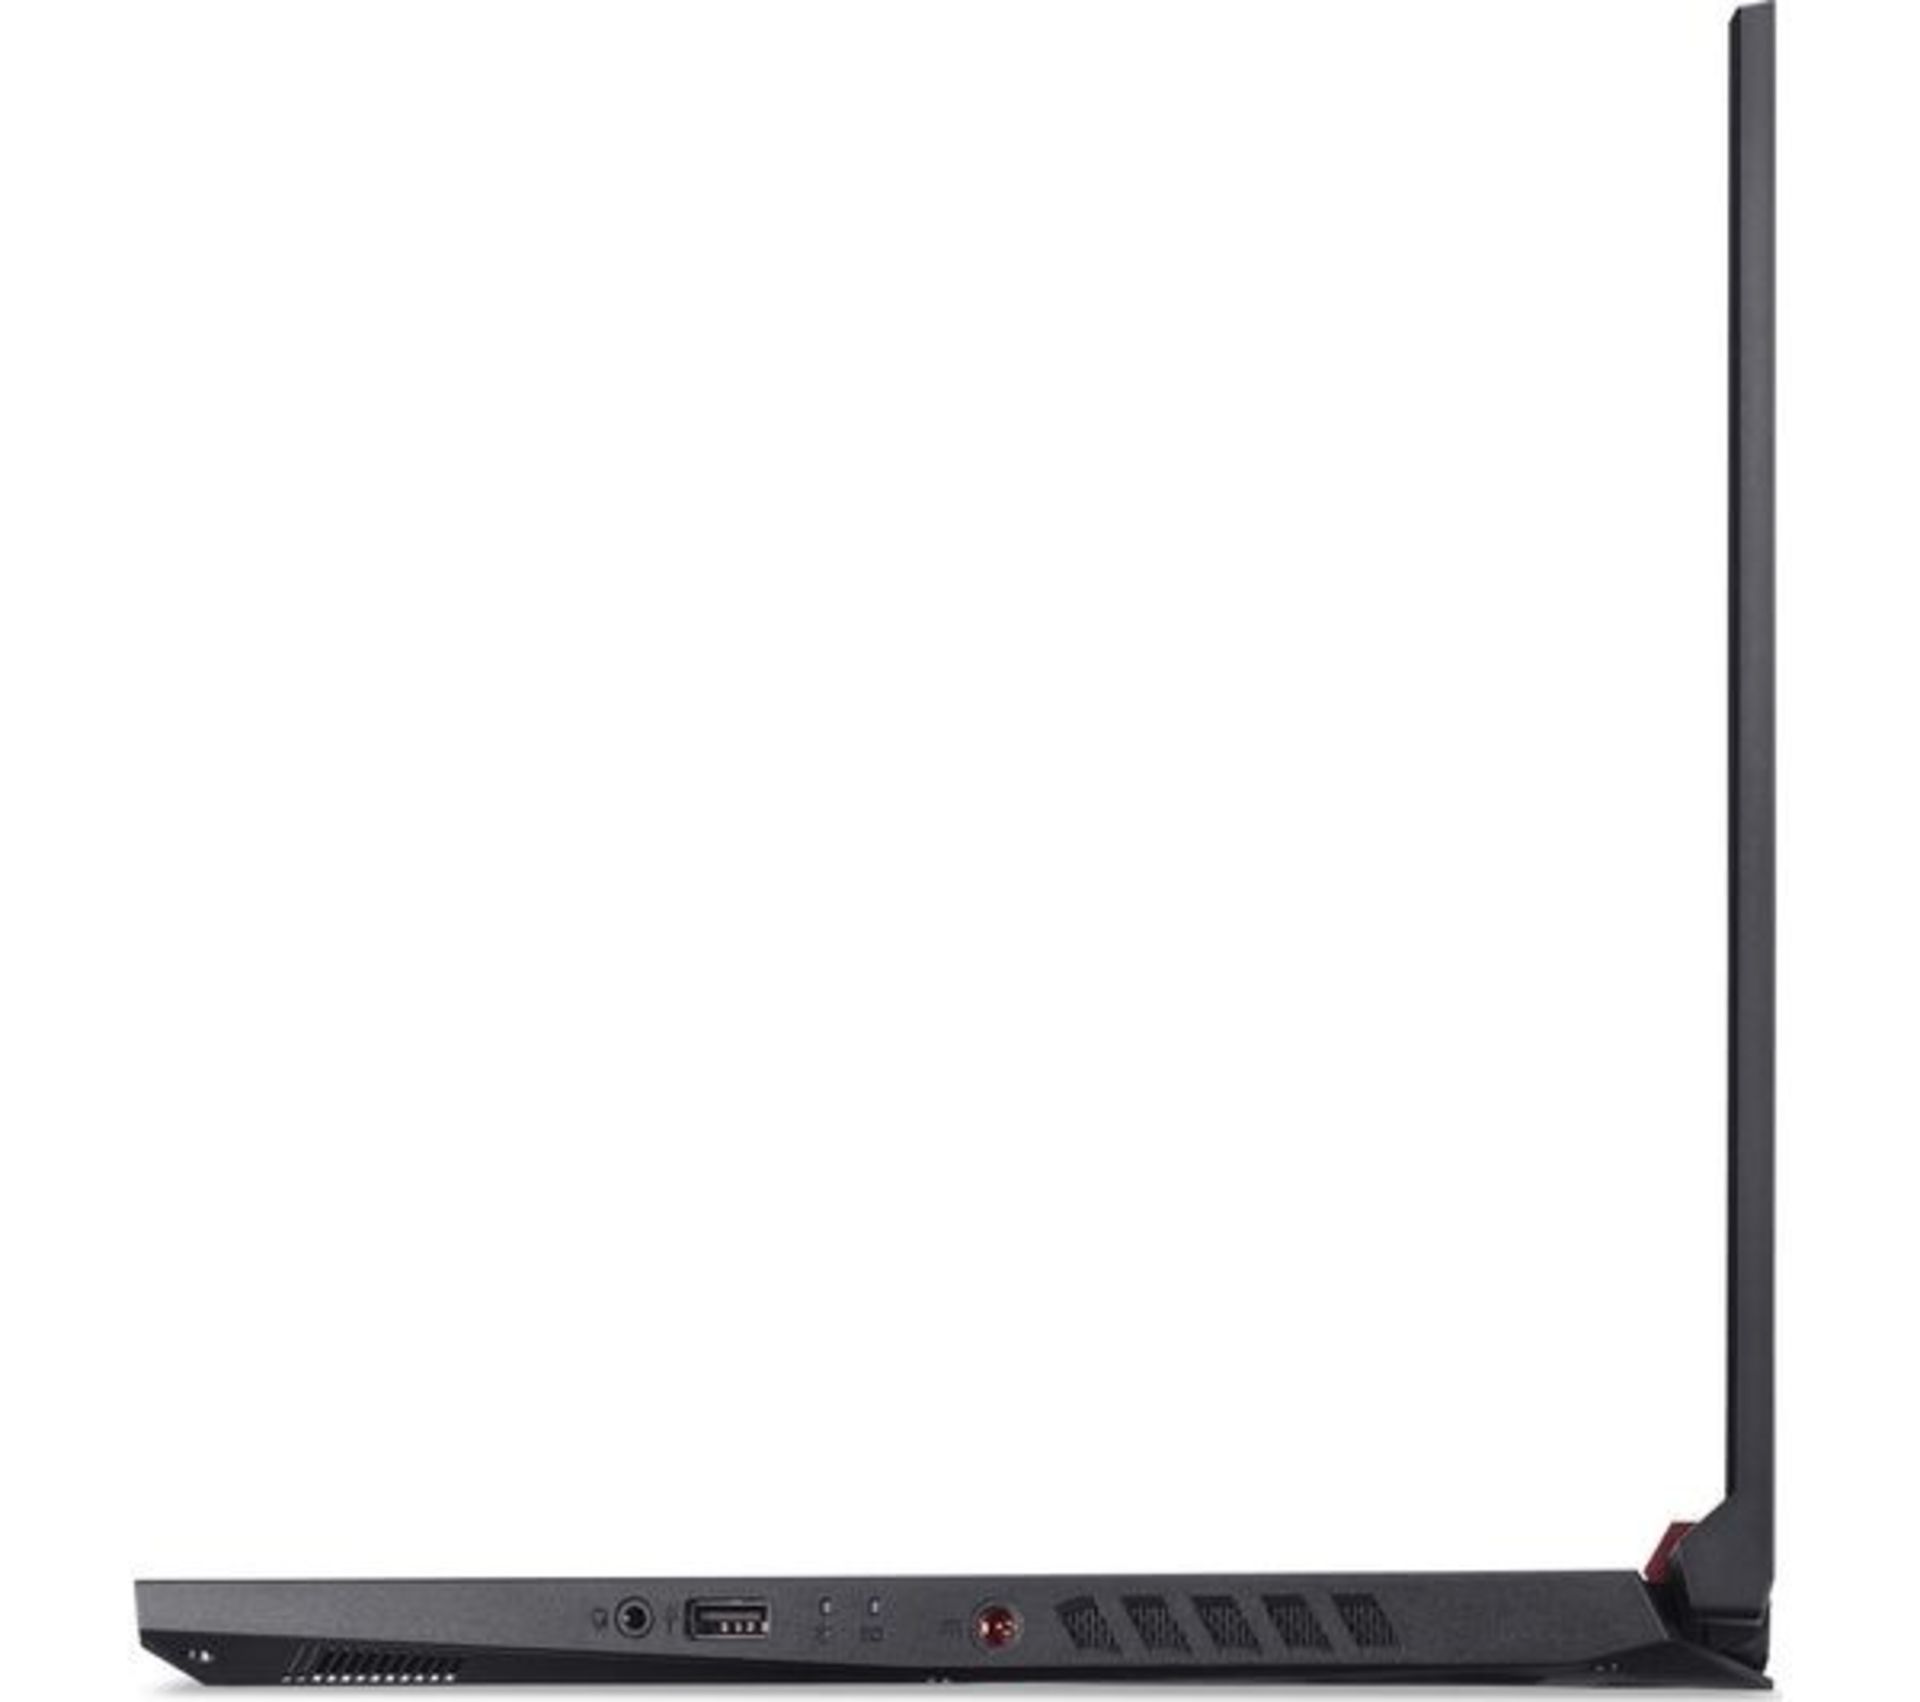 1 x Acer Nitro 17.3 Gaming Laptop - Intel i5-9300H, 16GB DDR4, 500GB M.2 SSD, 6GB GTX1660ti Graphics - Image 23 of 28